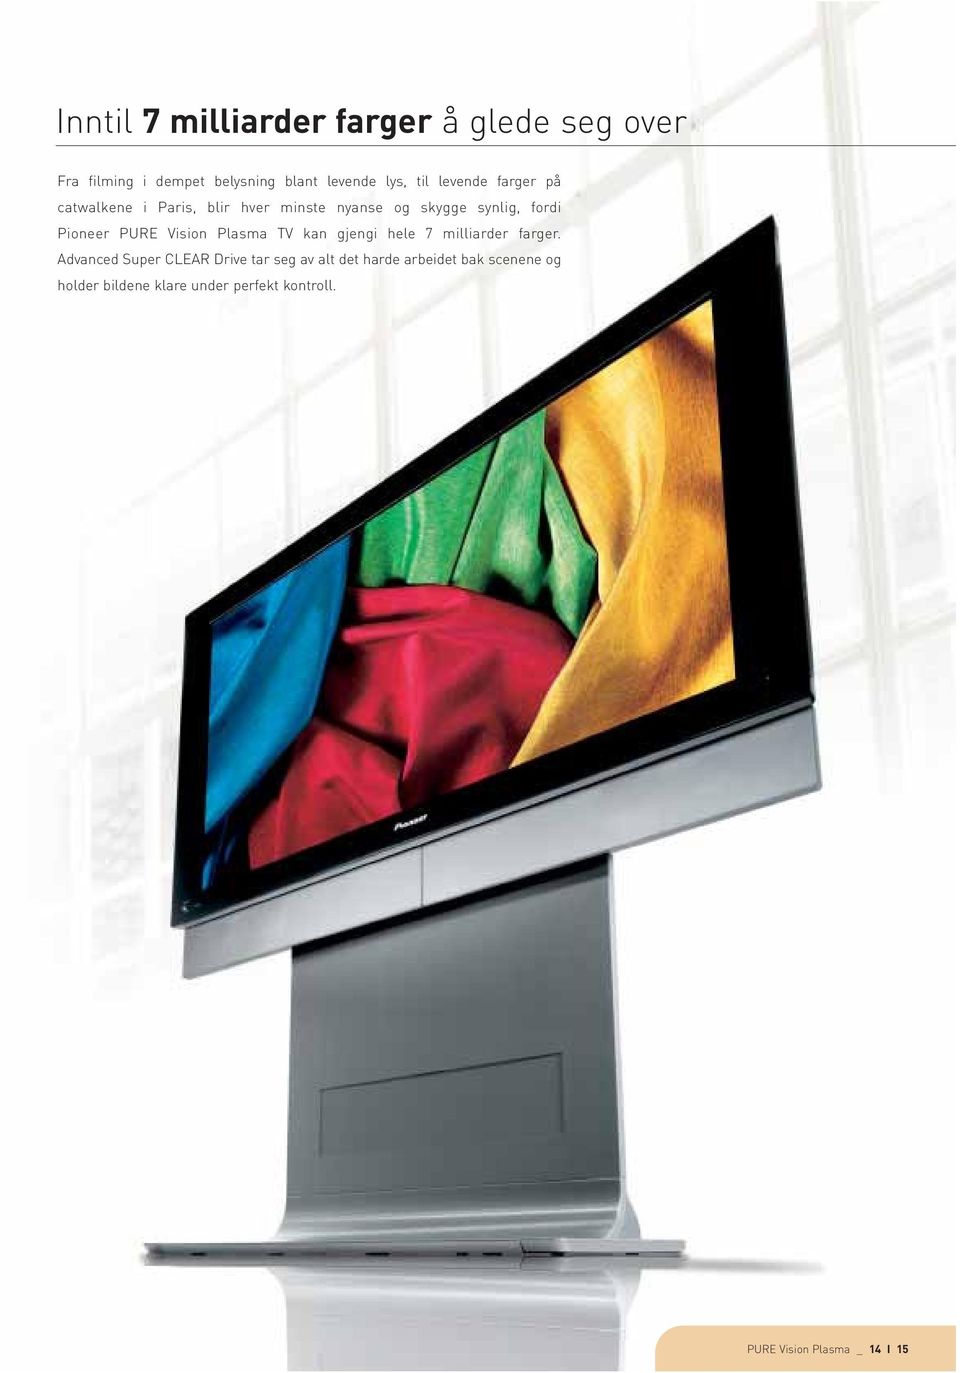 Vision Plasma TV kan gjengi hele 7 milliarder farger.